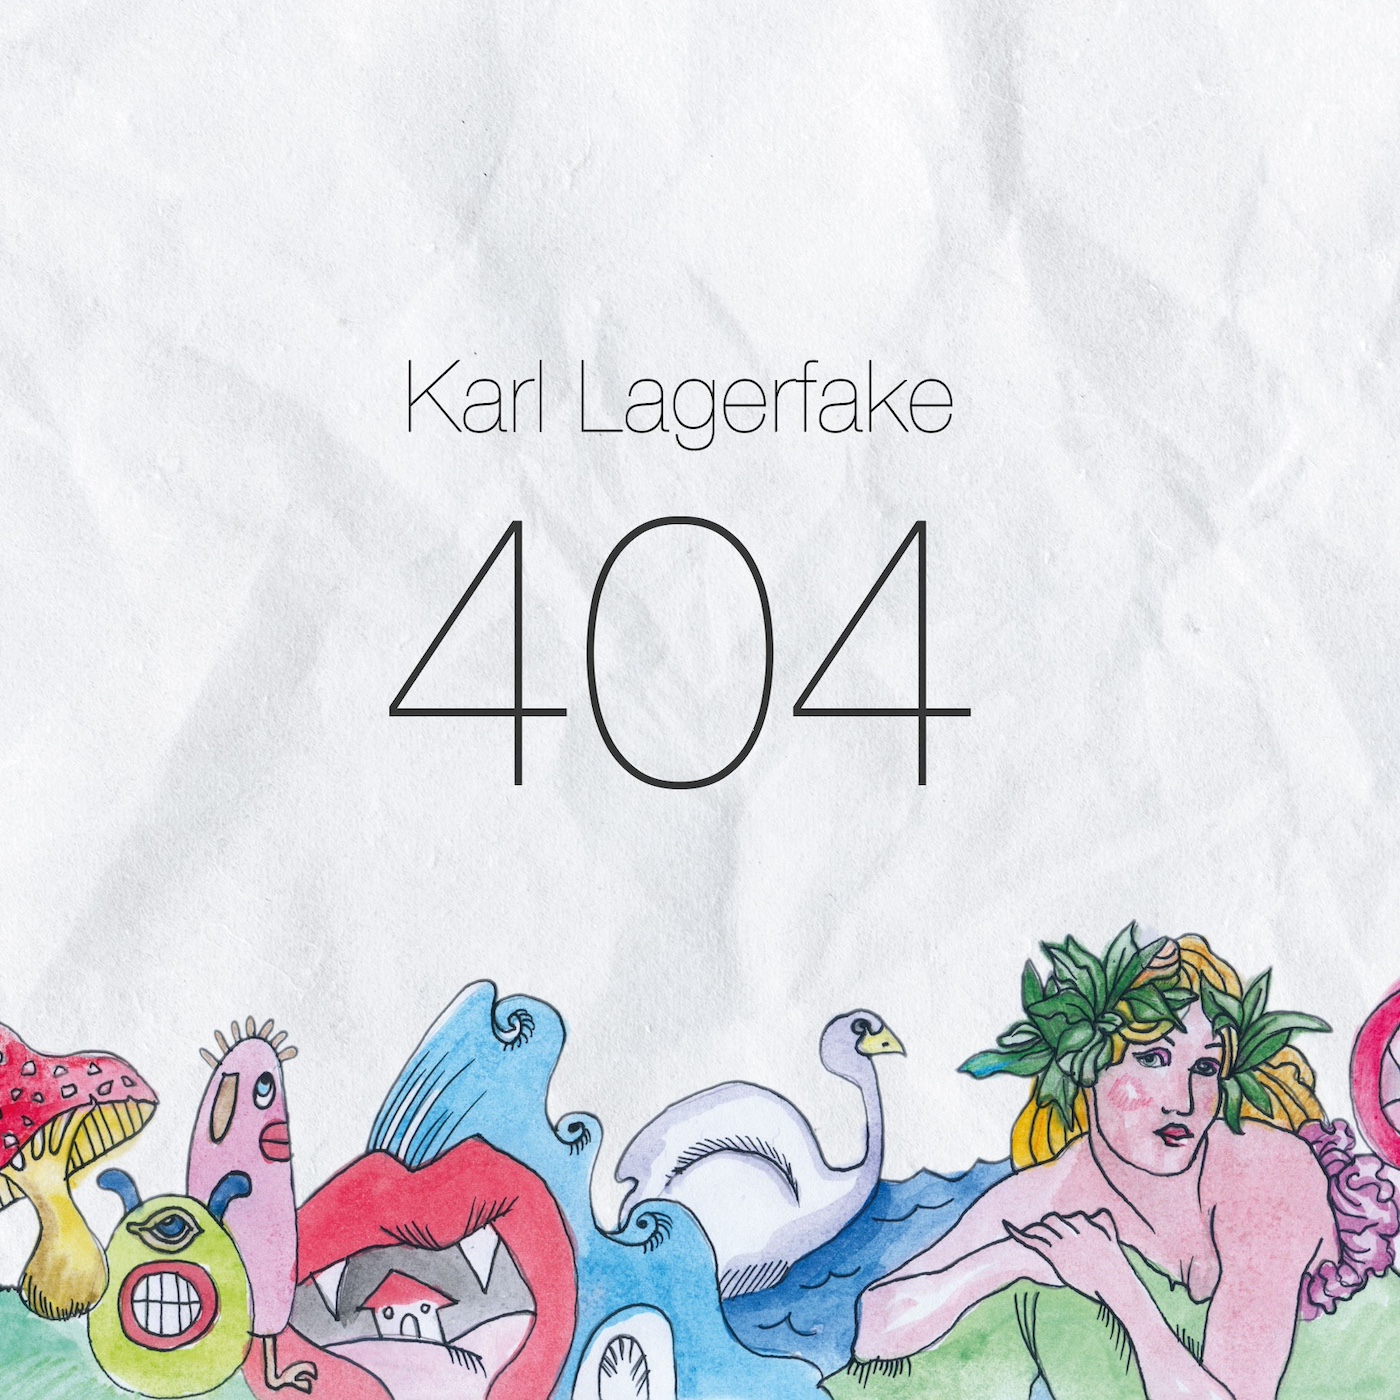 Karl Lagerfake – 404